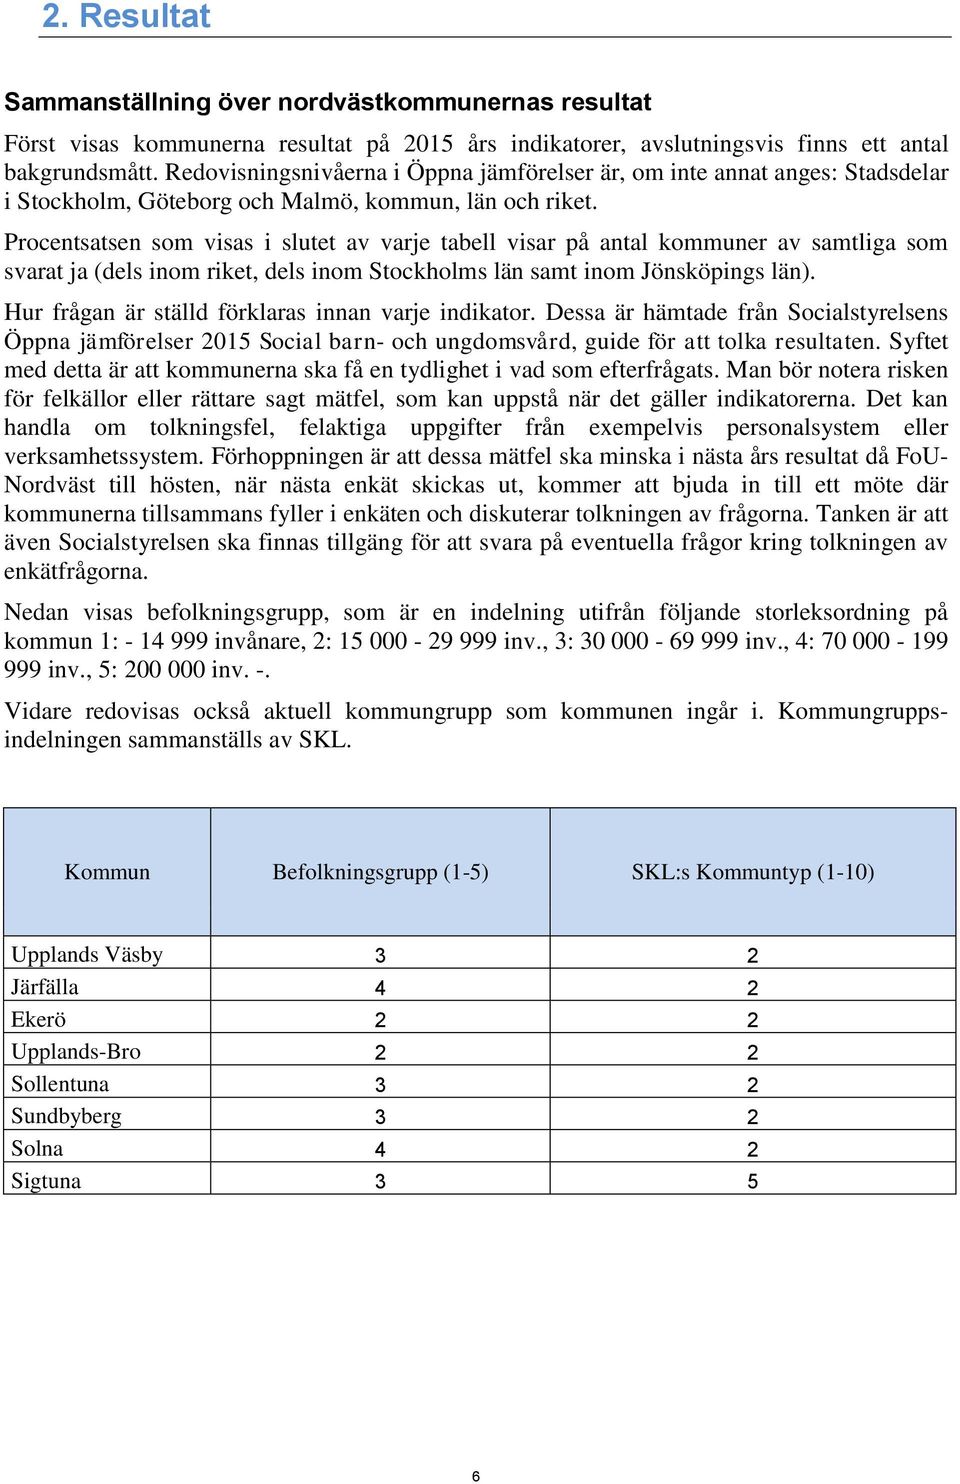 Procentsatsen som visas i slutet av varje tabell visar på antal kommuner av samtliga som svarat ja (dels inom riket, dels inom Stockholms län samt inom Jönsköpings län).